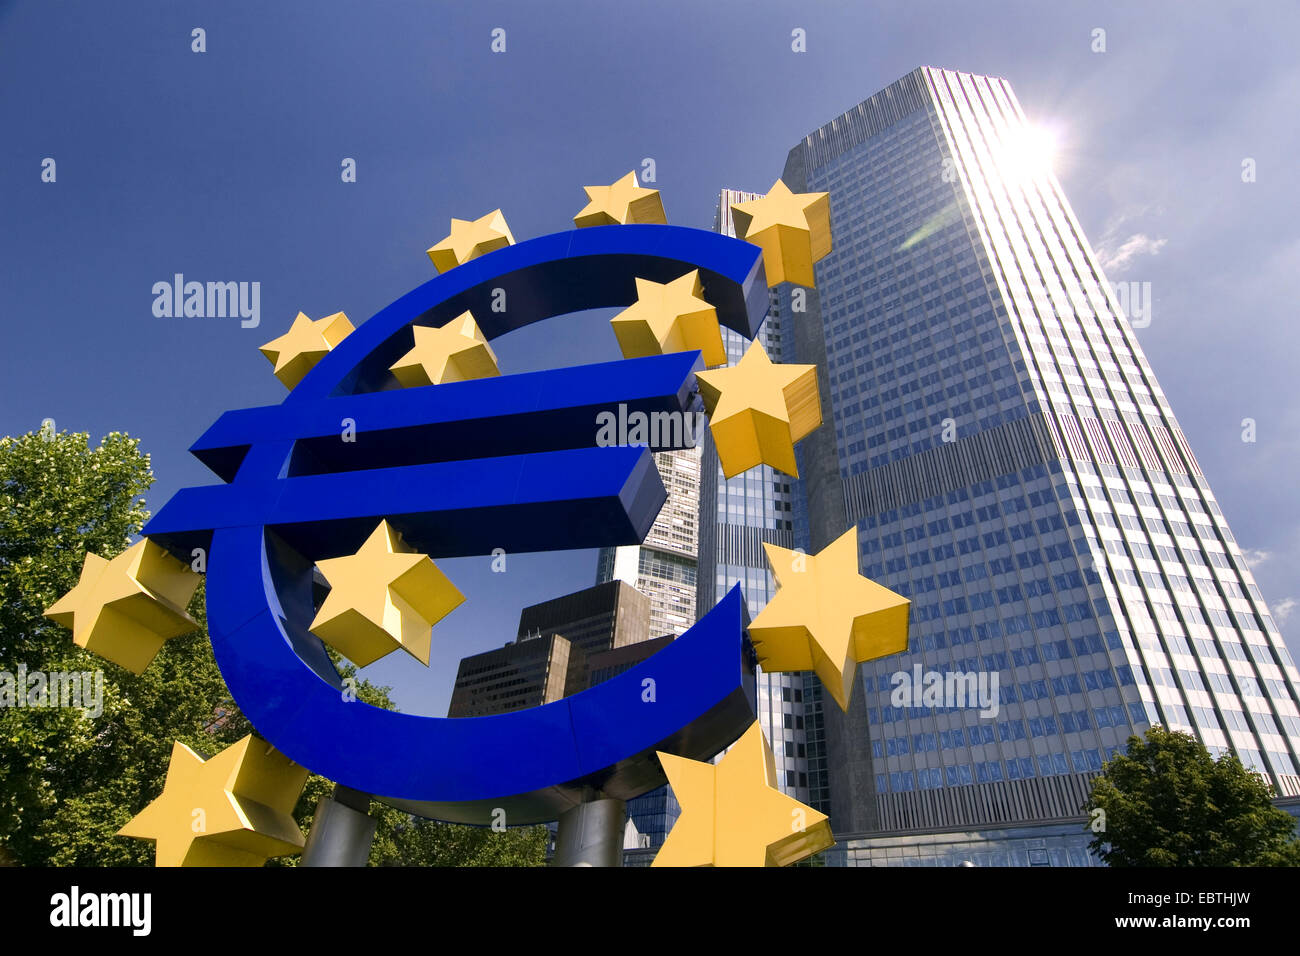 European Central Bank, Germany, Frankfurt/Main Stock Photo